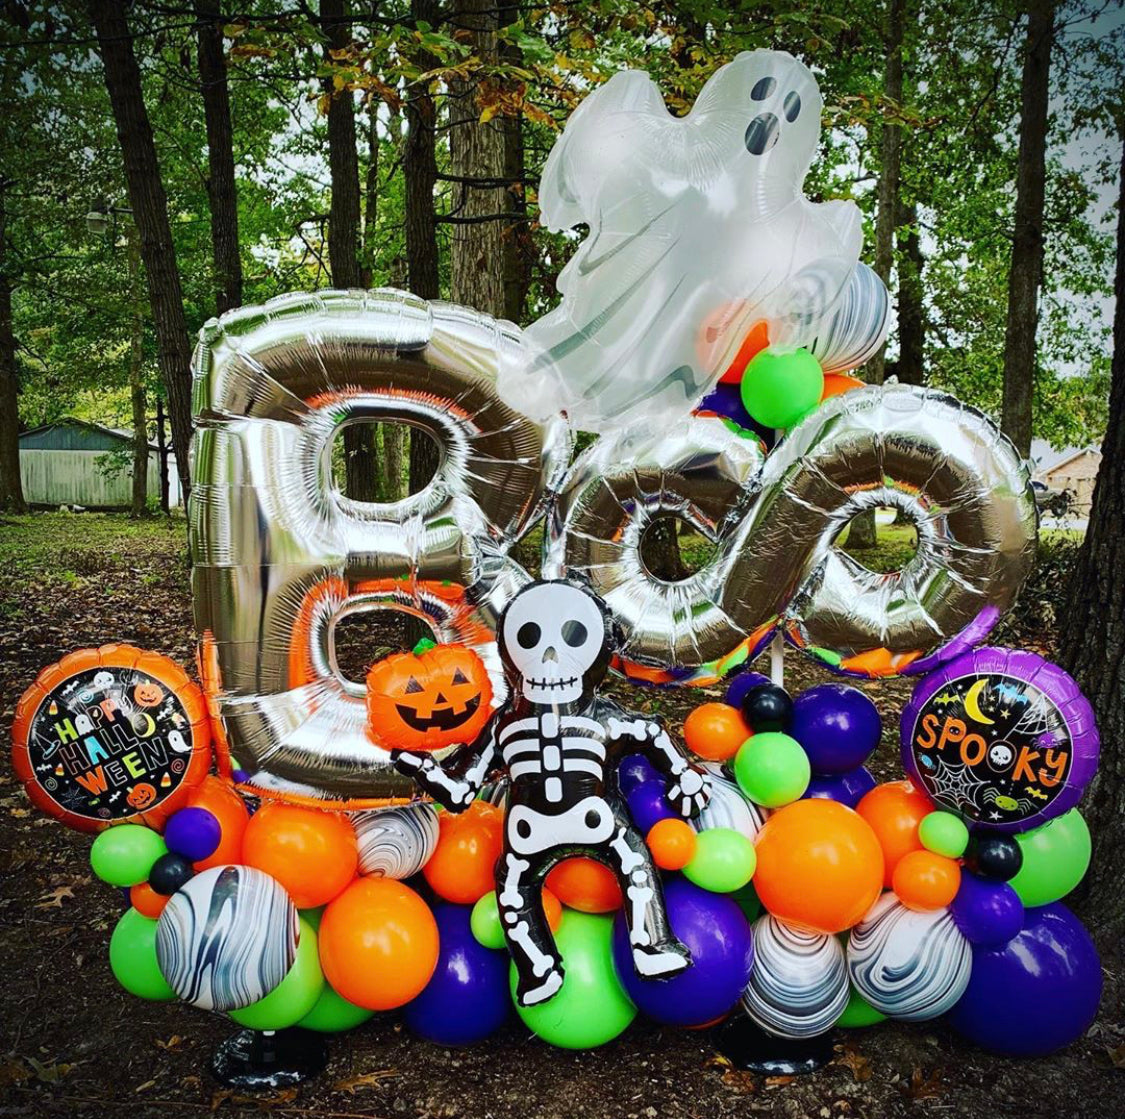 Maquillages et sculptures de ballons – Boo'tik d'Halloween